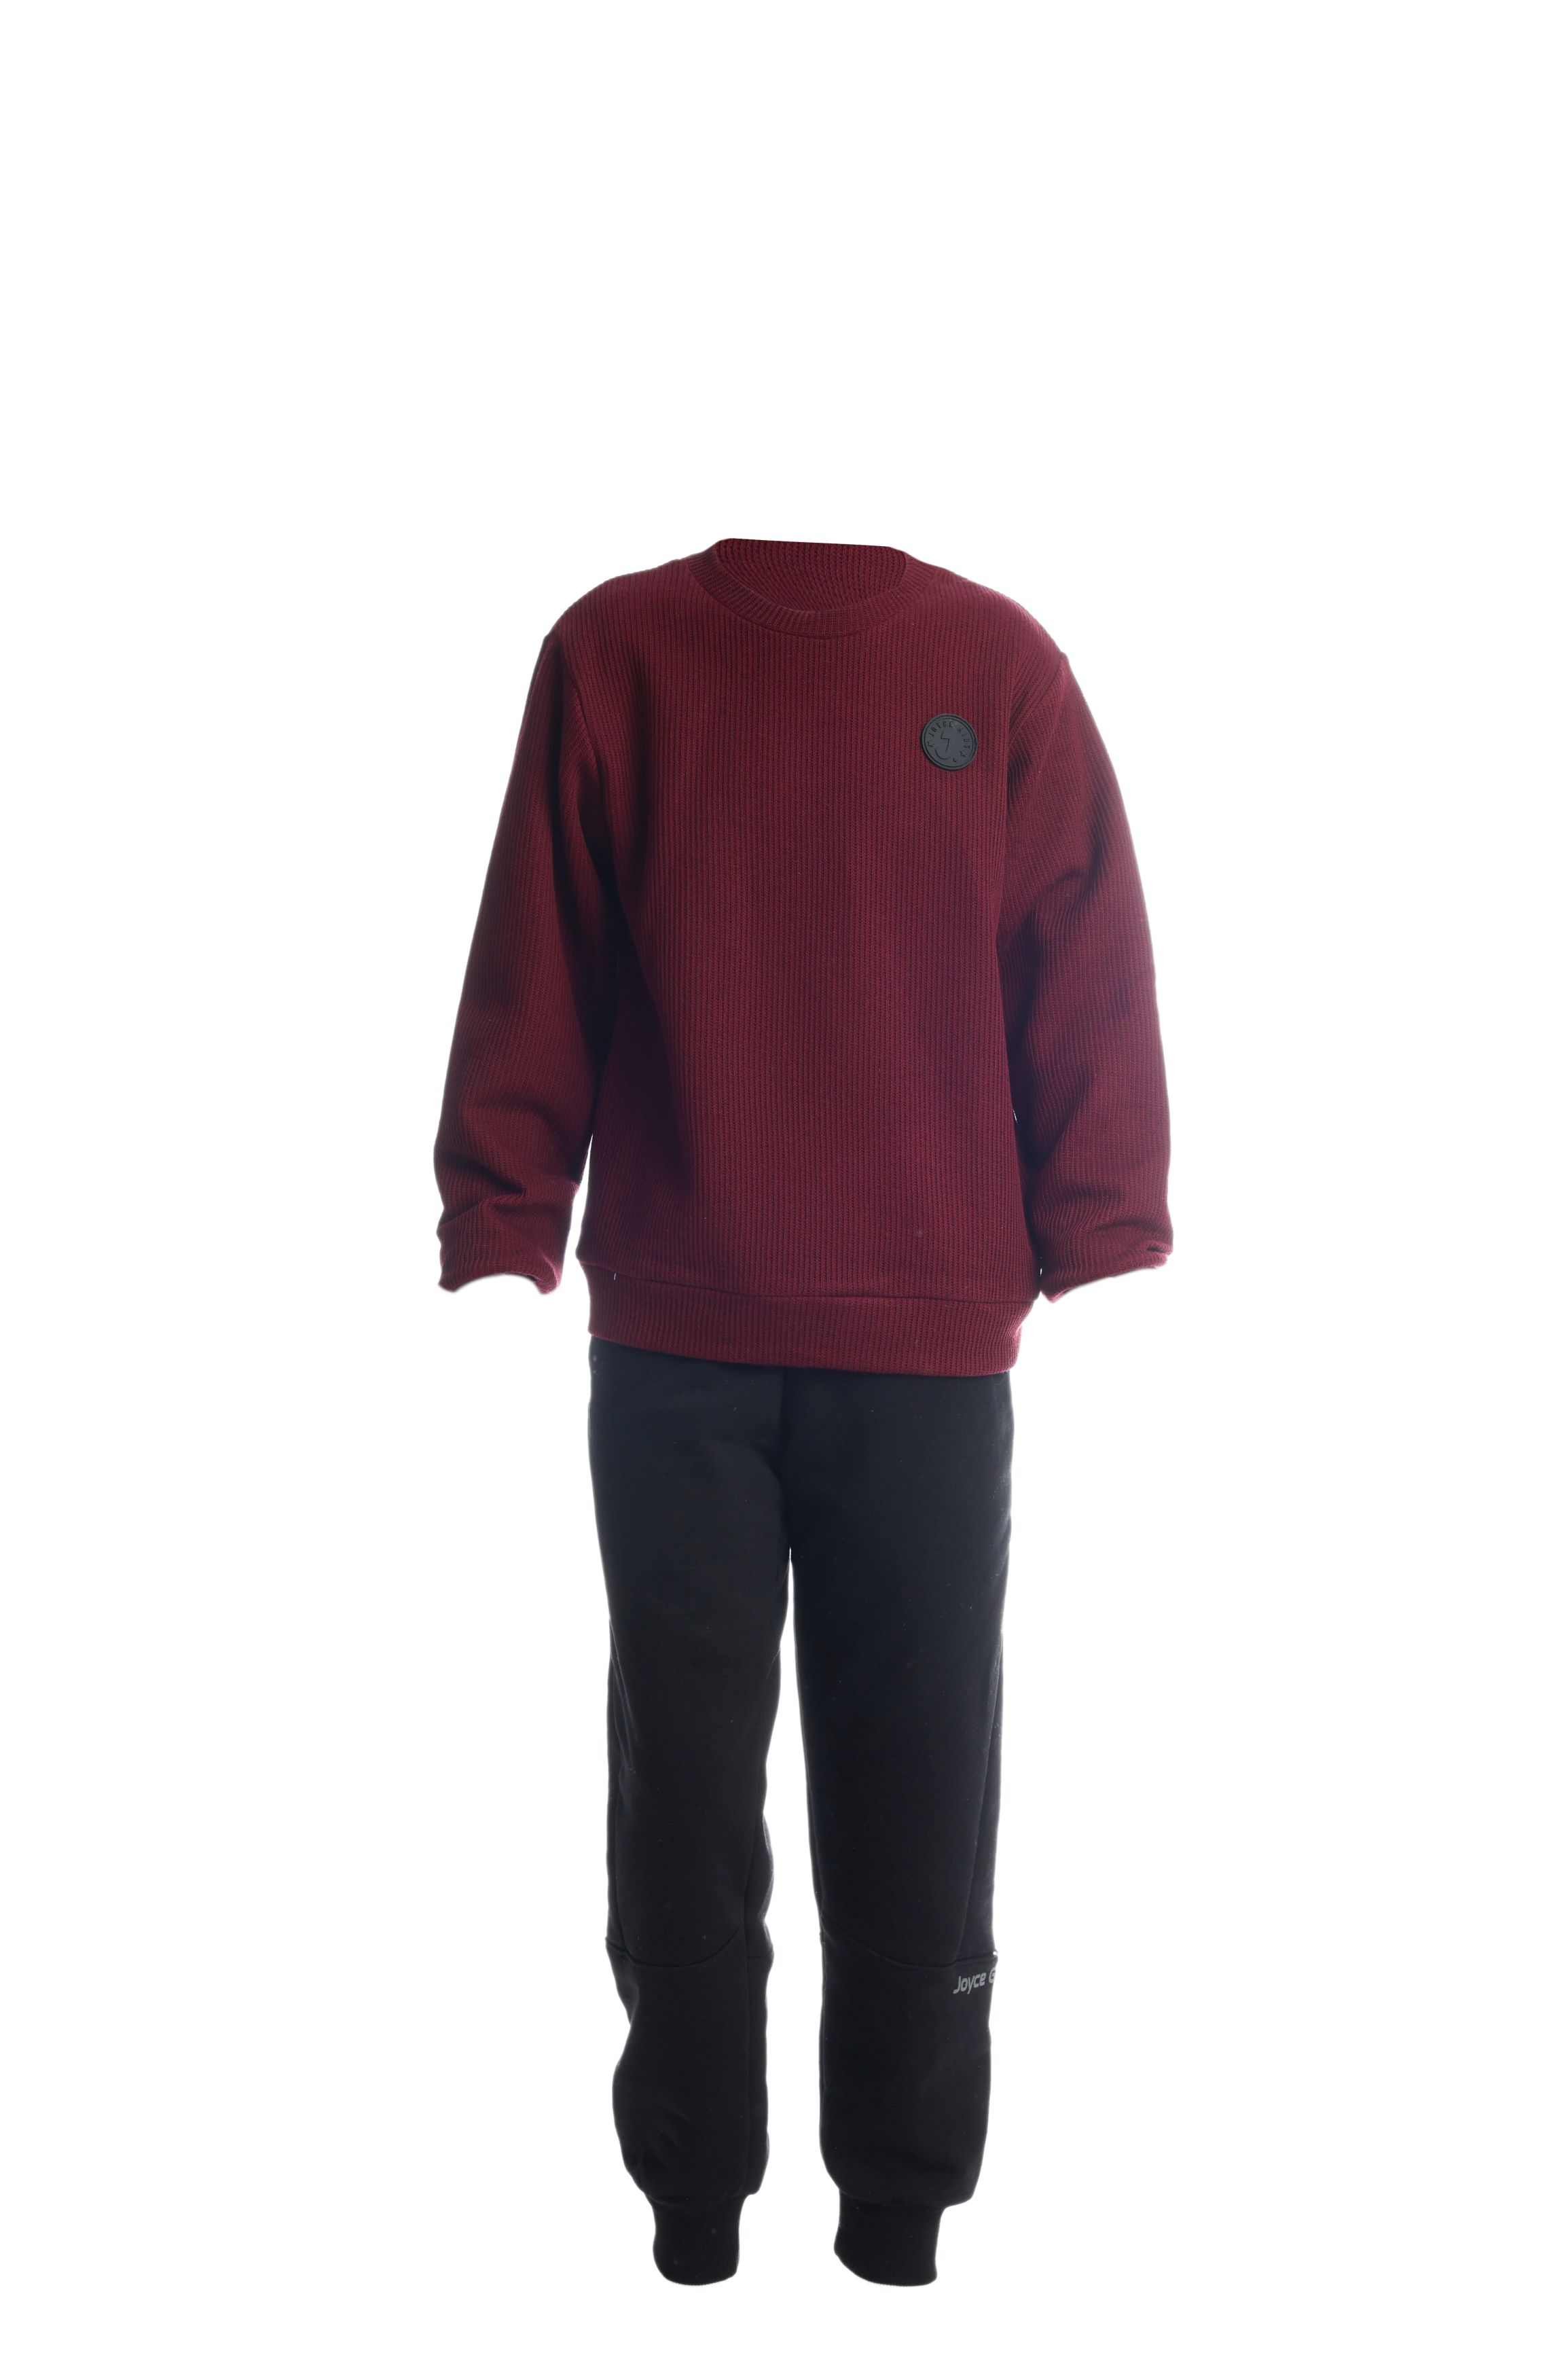 Chlapecké bavlněné tričko/svetr "TAB"/Zelená, vínová Barva: Vínová, Velikost: vel. 8 (126/132 cm)